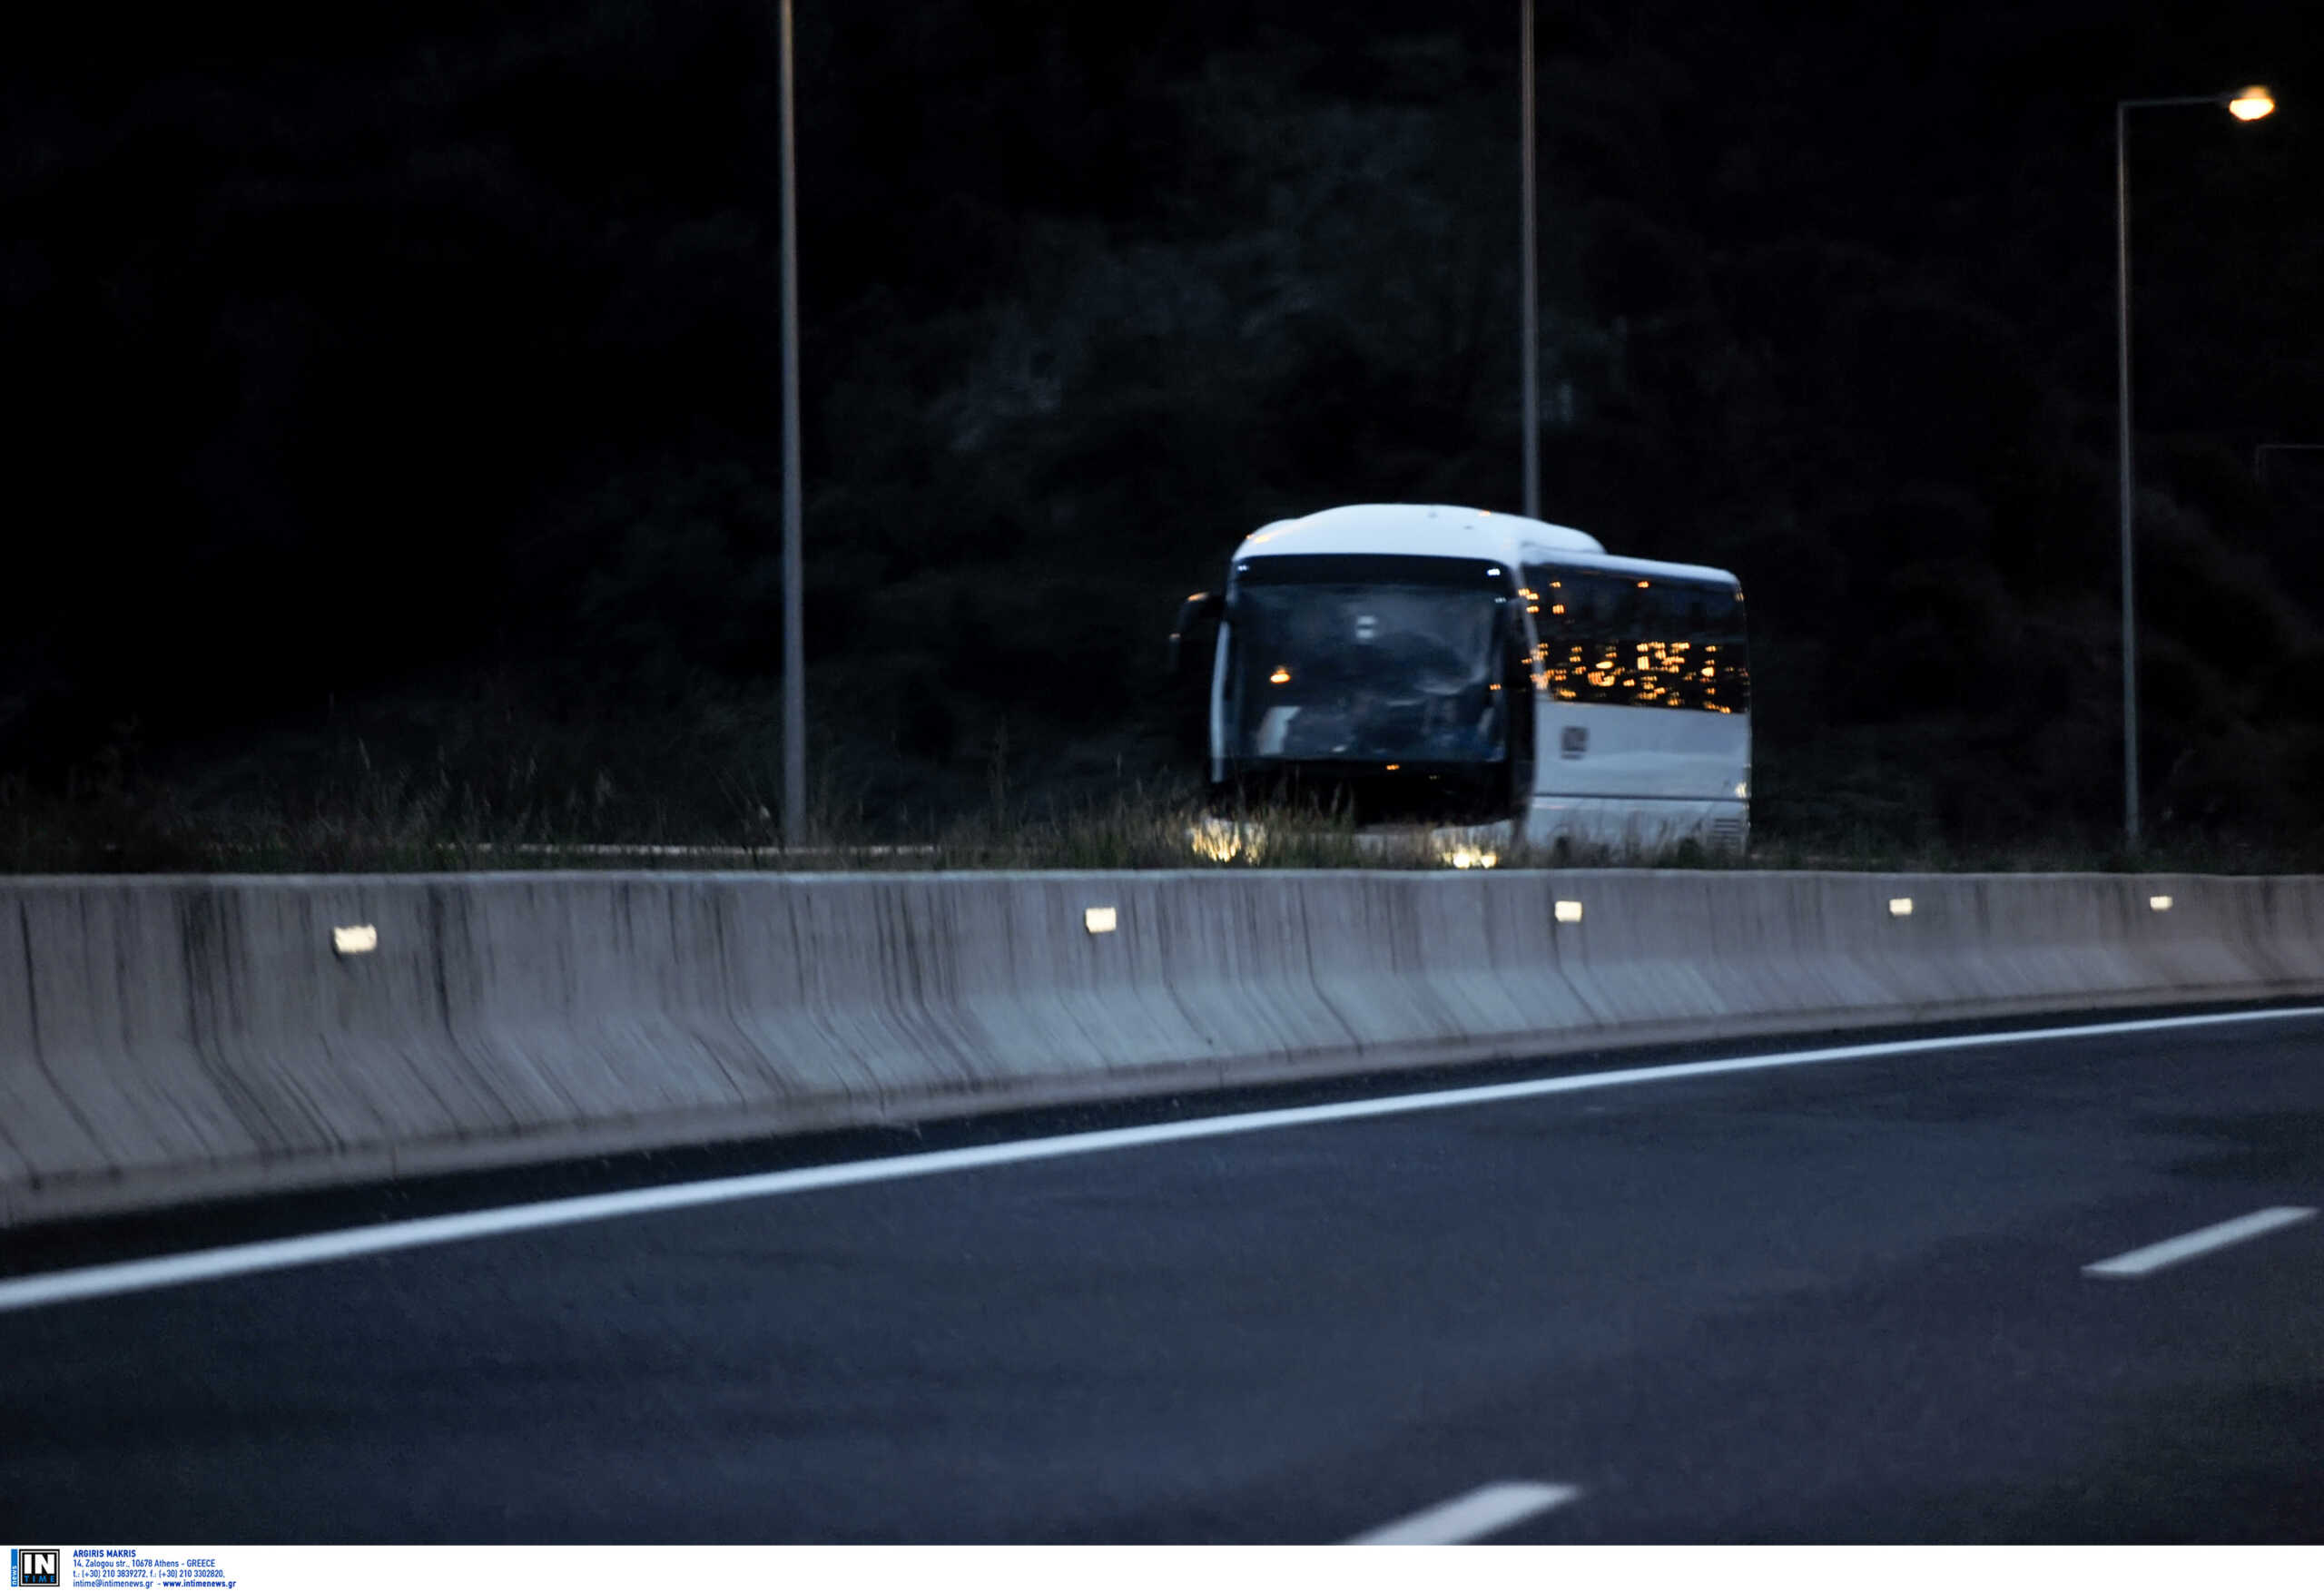 Θεσσαλονίκη: Μητροπολίτης έπεσε θύμα ληστείας σε τουριστικό λεωφορείο